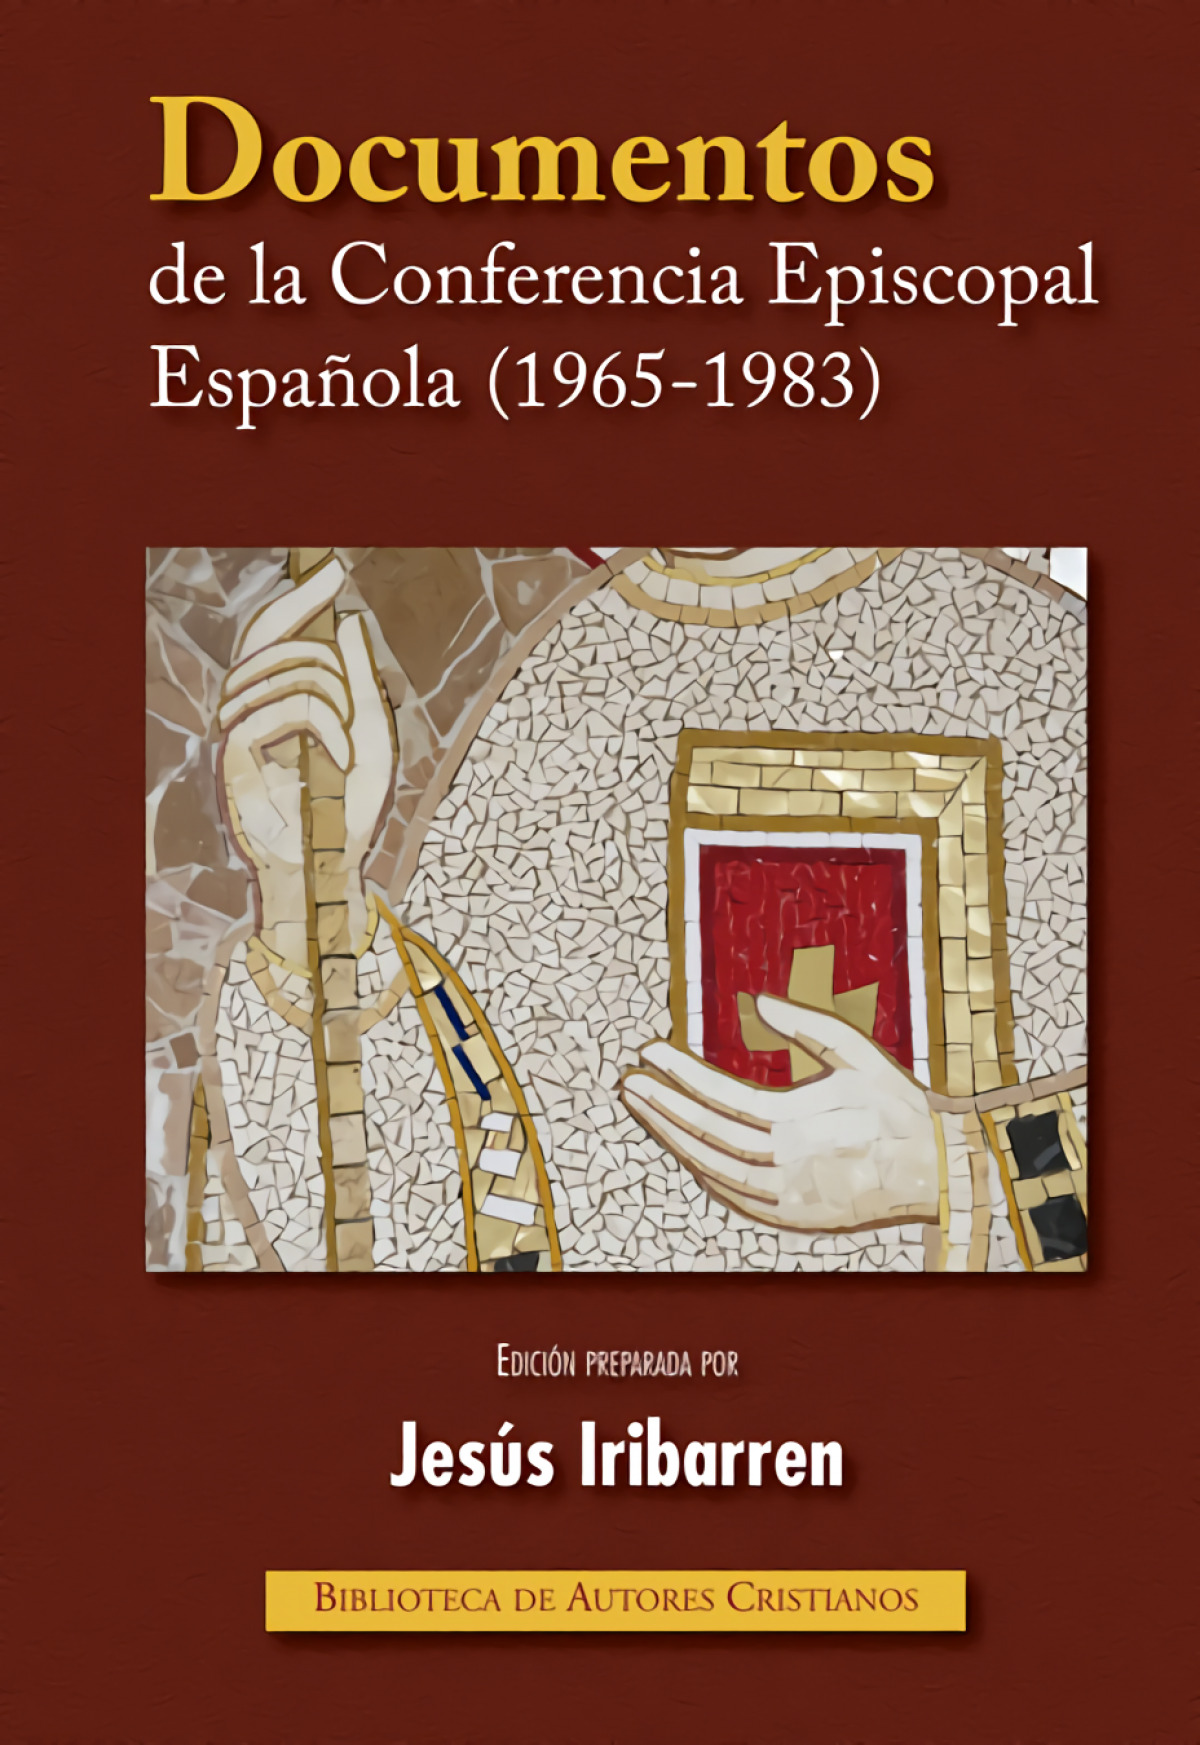 Documentos de la Conferencia Episcopal Española (1965-1983) - Conferencia Episcopal Española